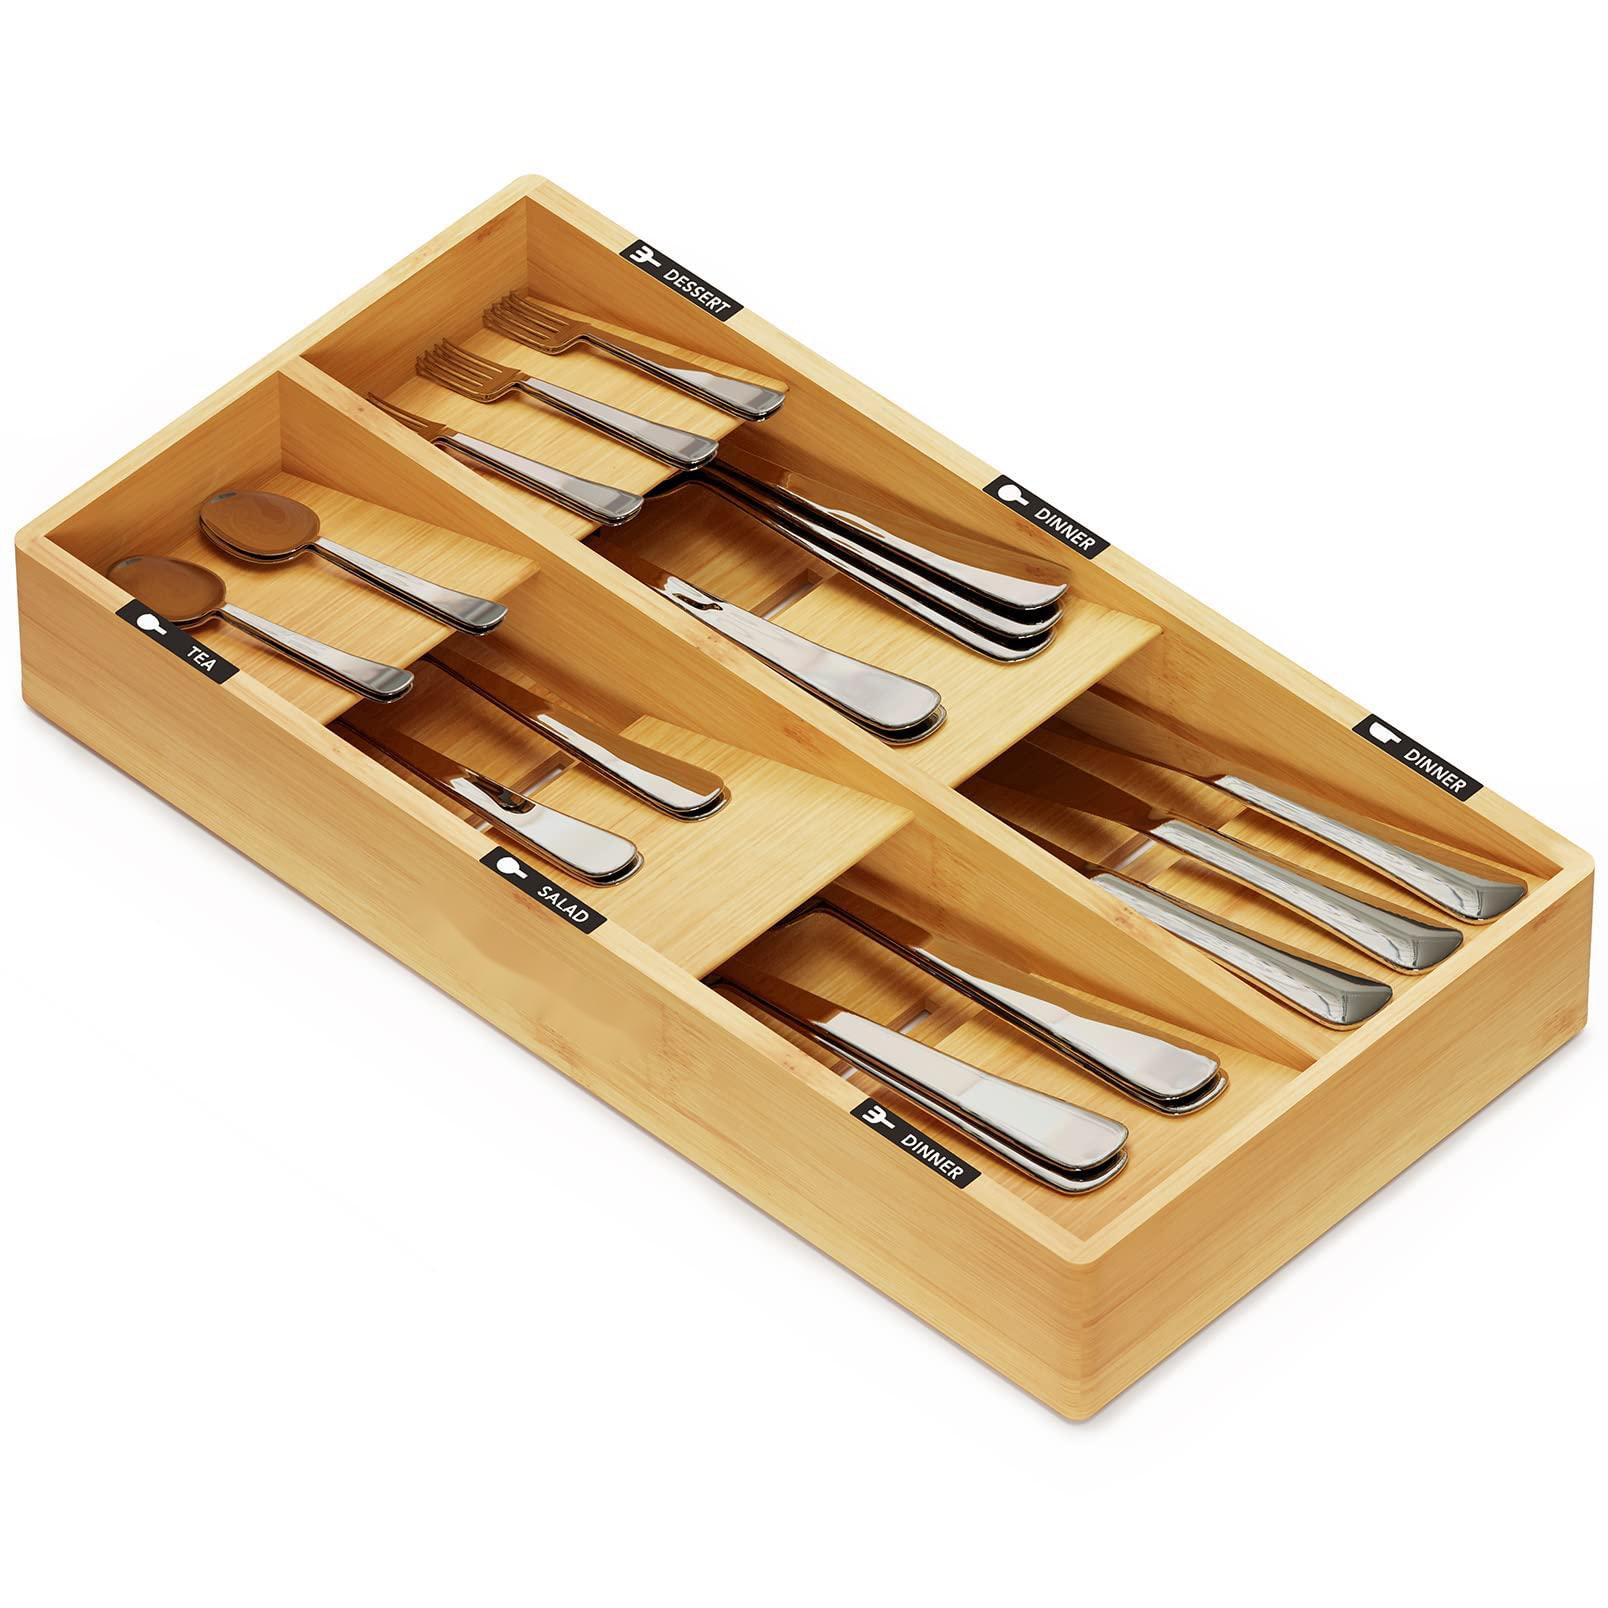 https://assets.wfcdn.com/im/00496450/compr-r85/2501/250193309/callas-24-h-x-156-w-x-8-d-flatware-kitchen-utensils-drawer-organizer.jpg